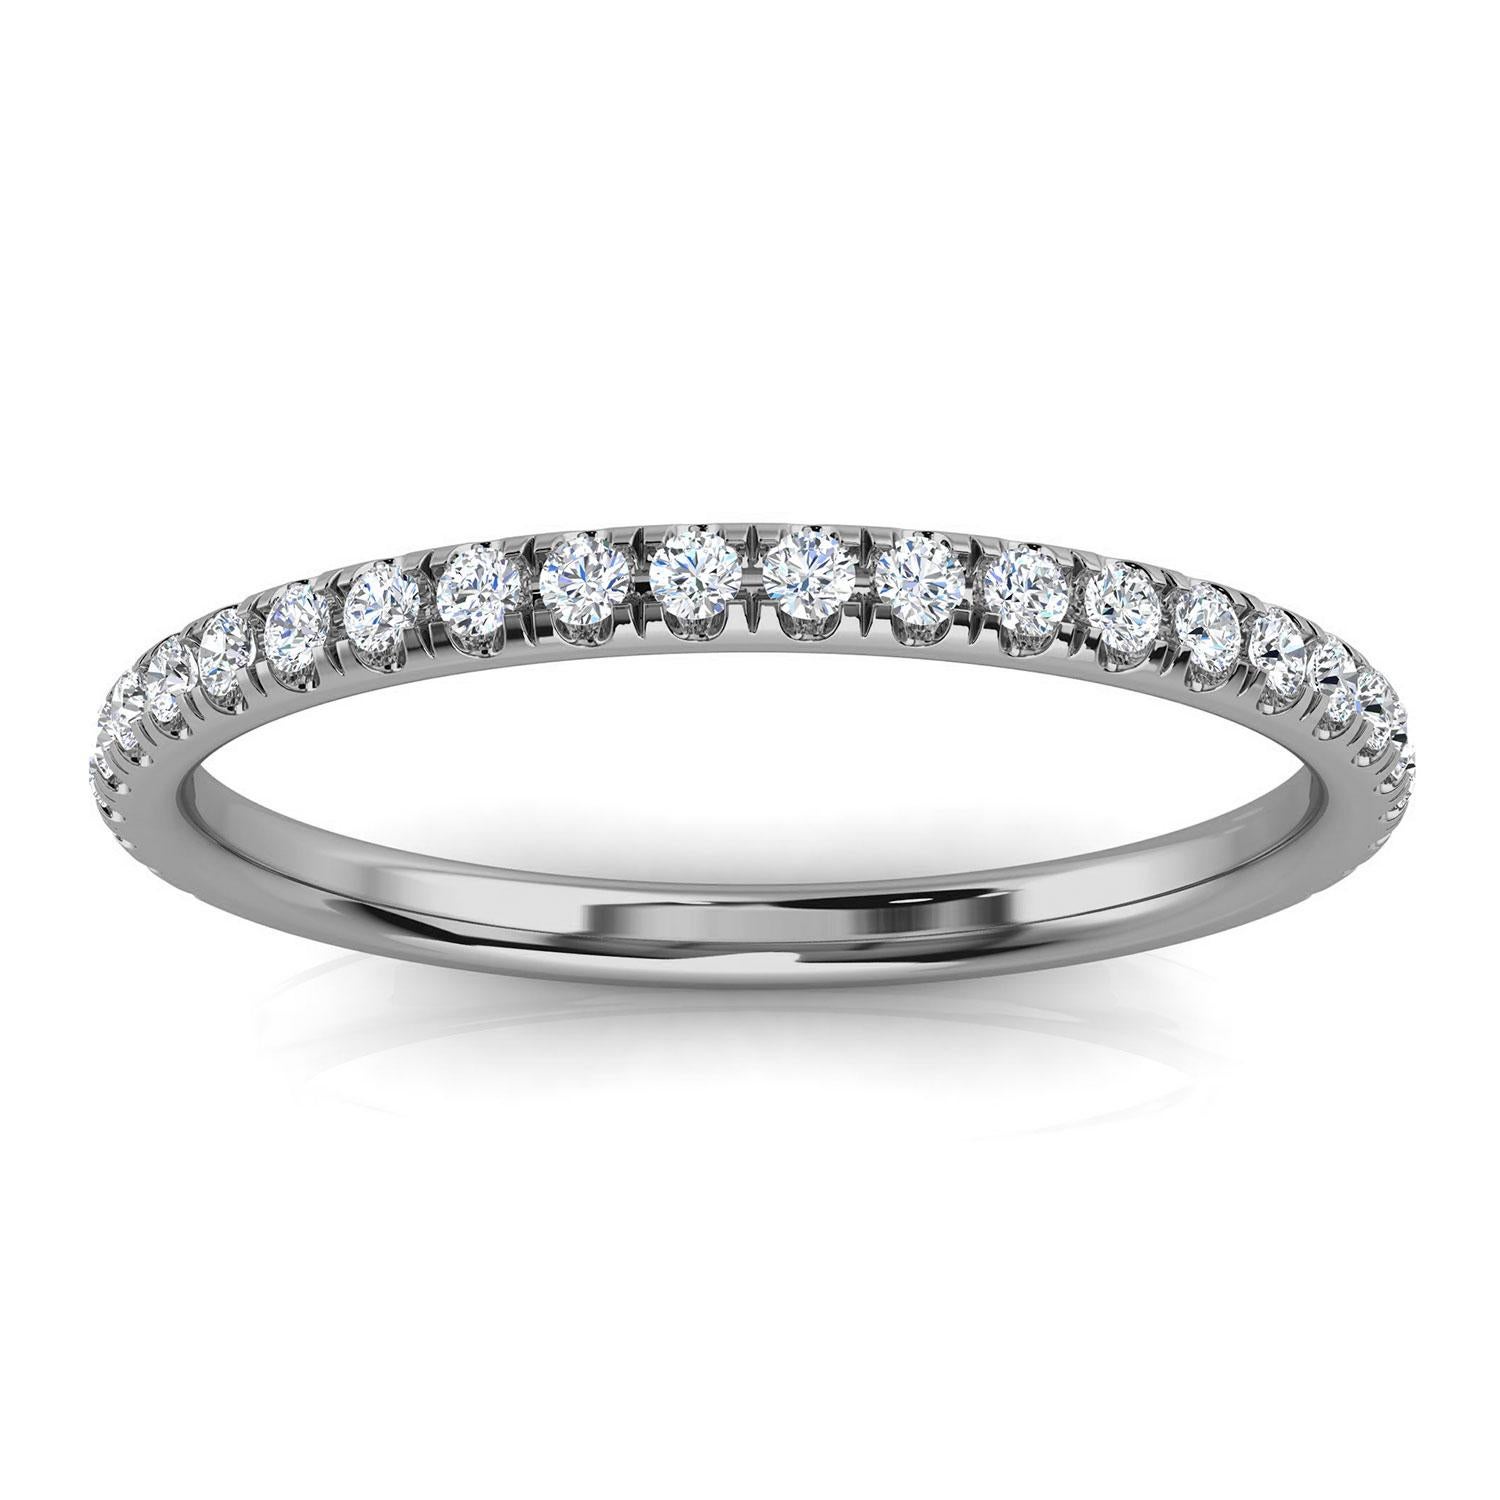 Cette délicate bague comporte vingt-six (26) diamants ronds brillants sertis en micro-pinces sur un anneau de 1,5 mm. Il s'agit de l'anneau parfaitement assorti à la bague Monro Cushion Halo dans notre section bague de fiançailles. Découvrez la